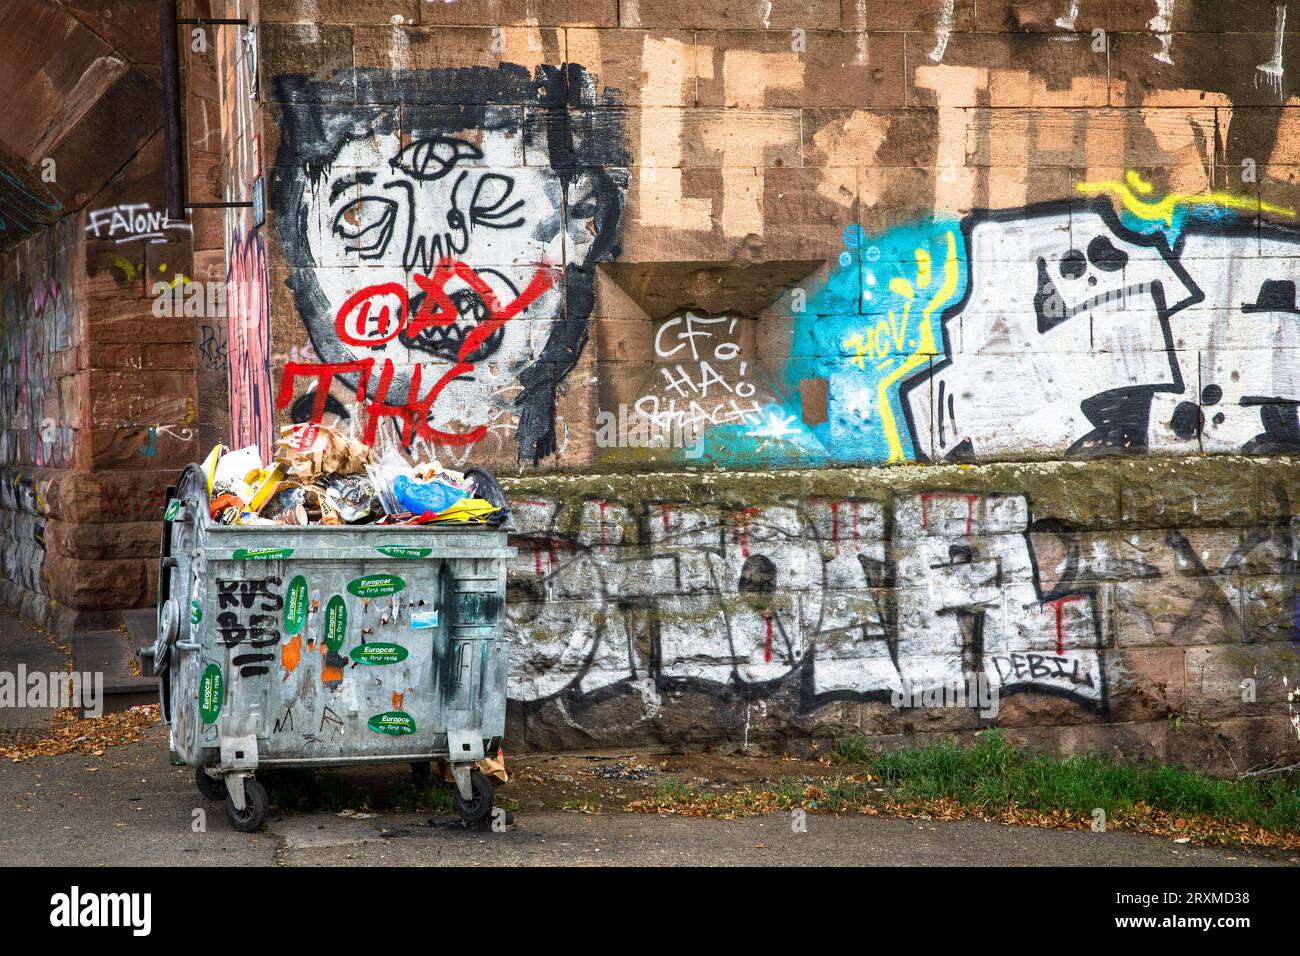 Überlaufender Müllcontainer, Graffiti auf der Südbrücke im Stadtteil Poll, Köln, Deutschland. Uebervoller Muellcontainer, Graffitis an der S Stockfoto